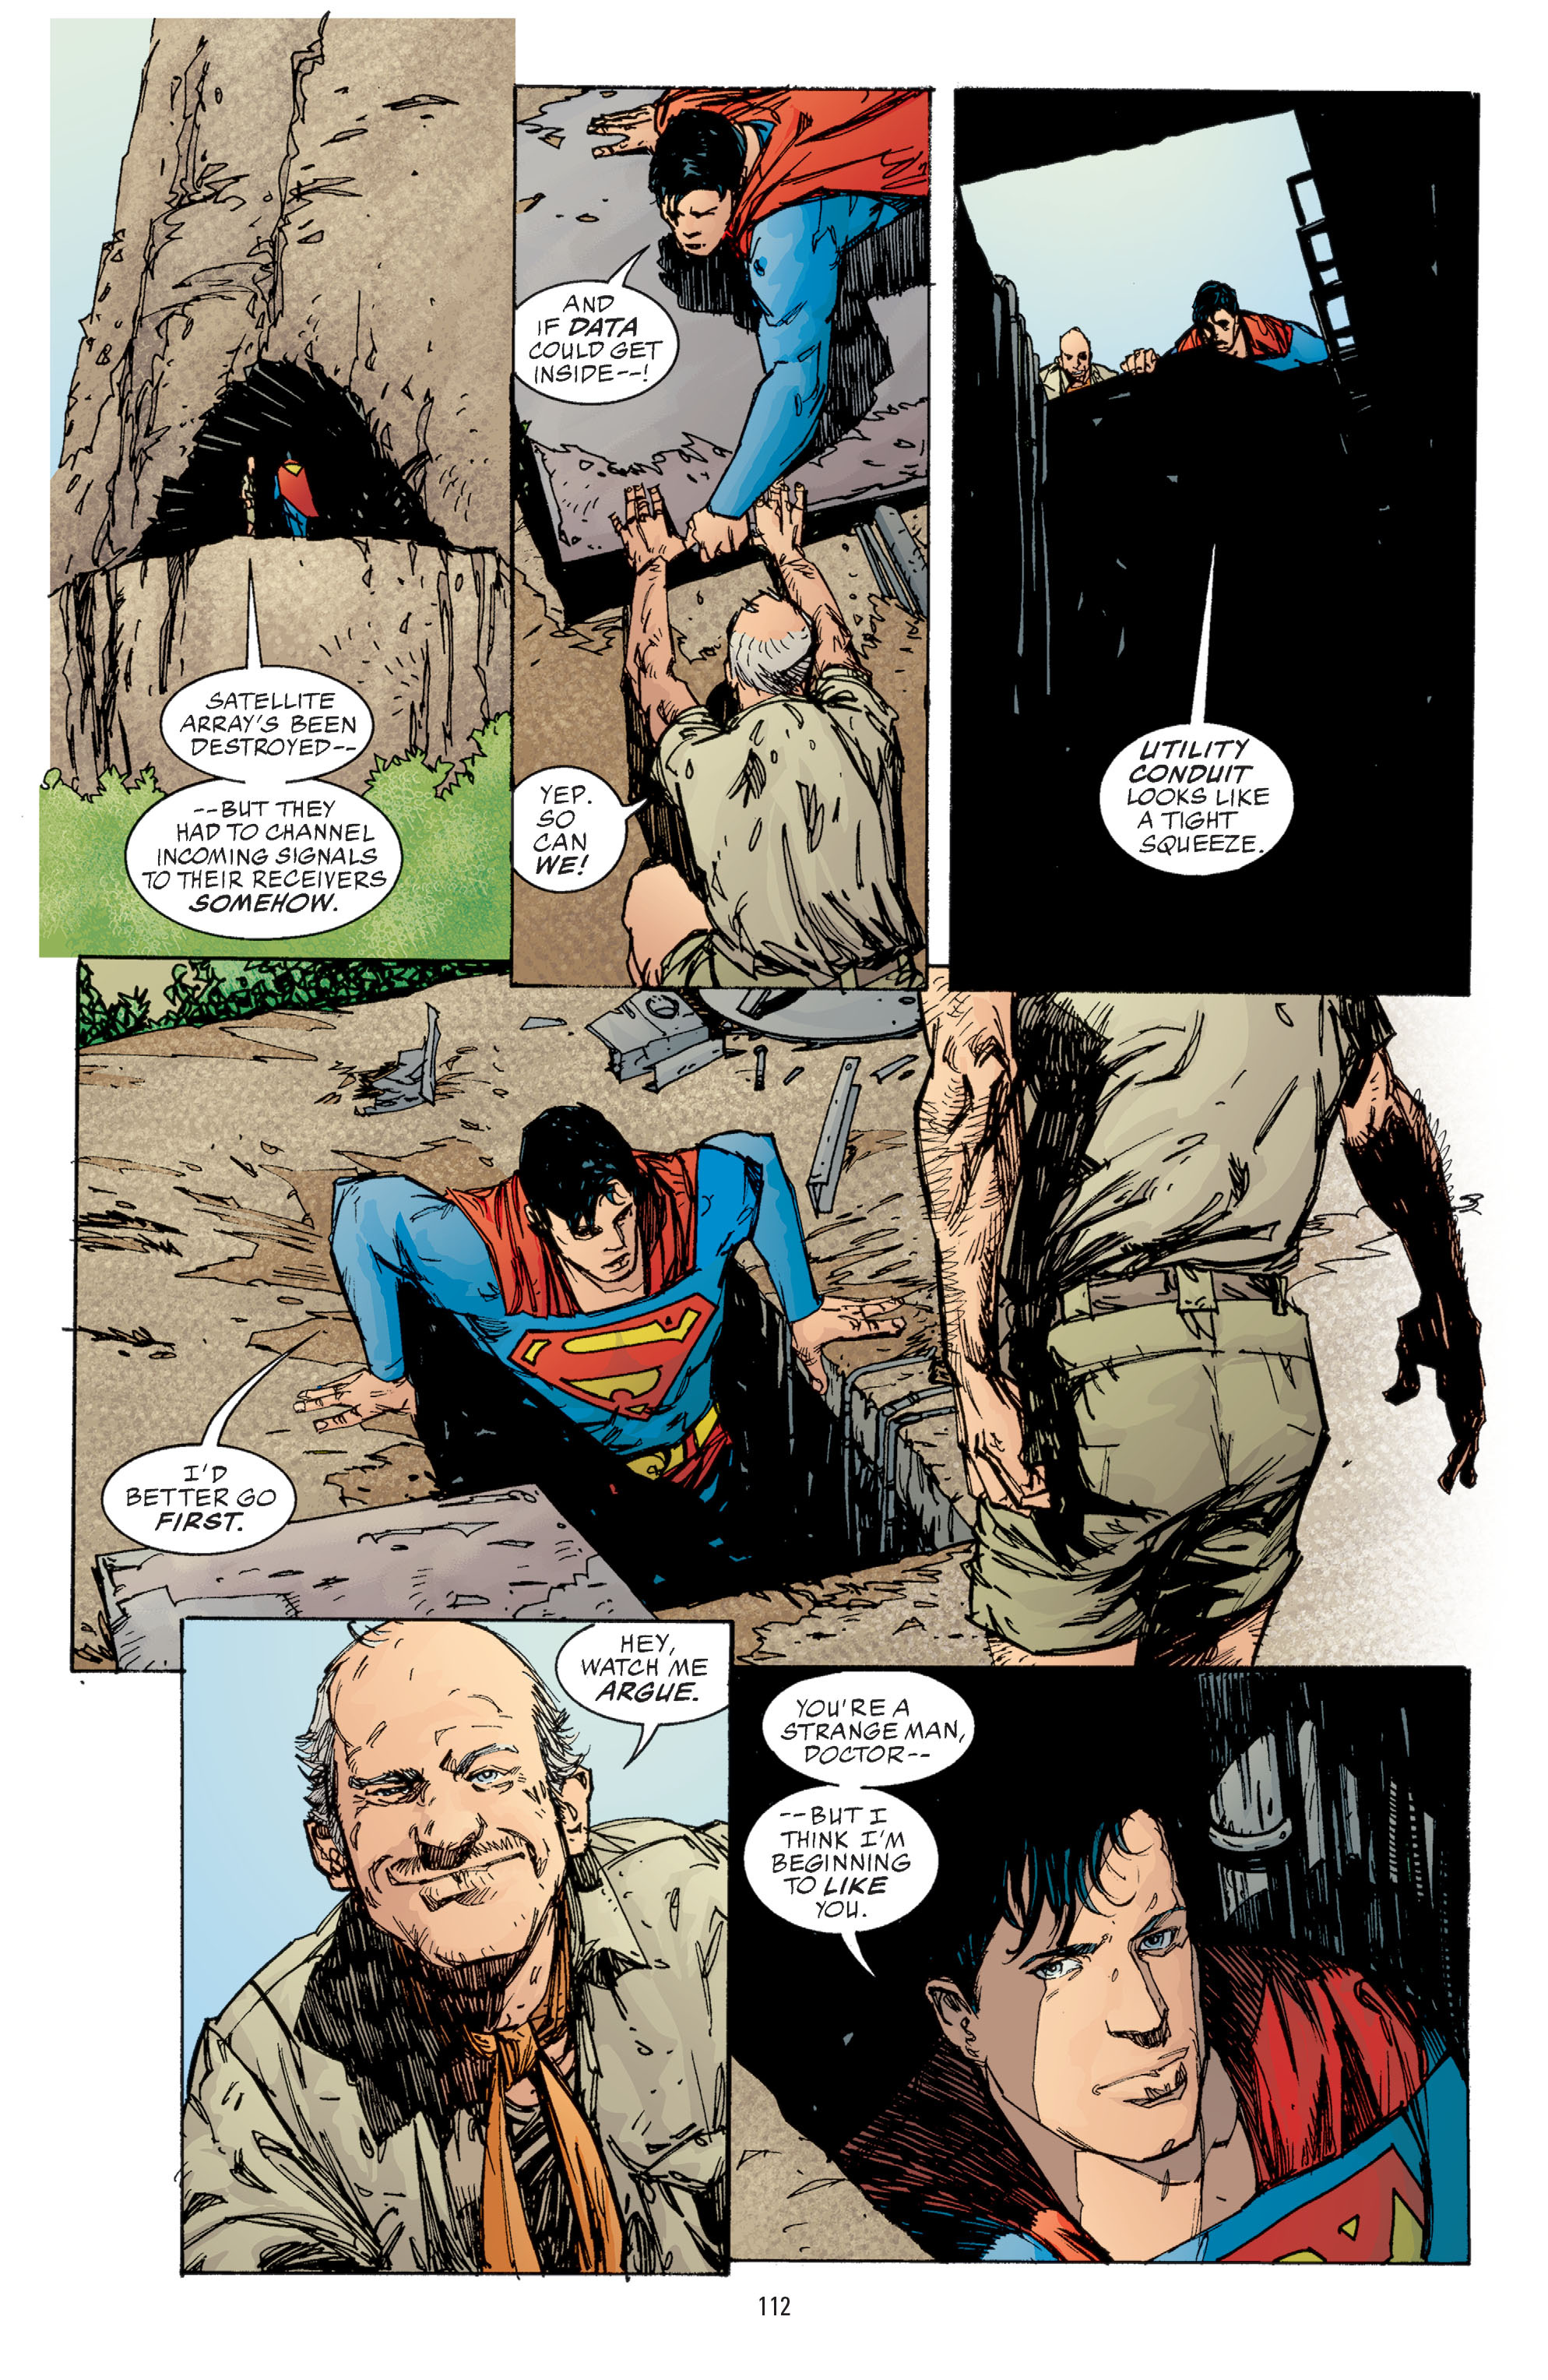 DC Comics/Dark Horse Comics: Justice League Full #1 - English 110